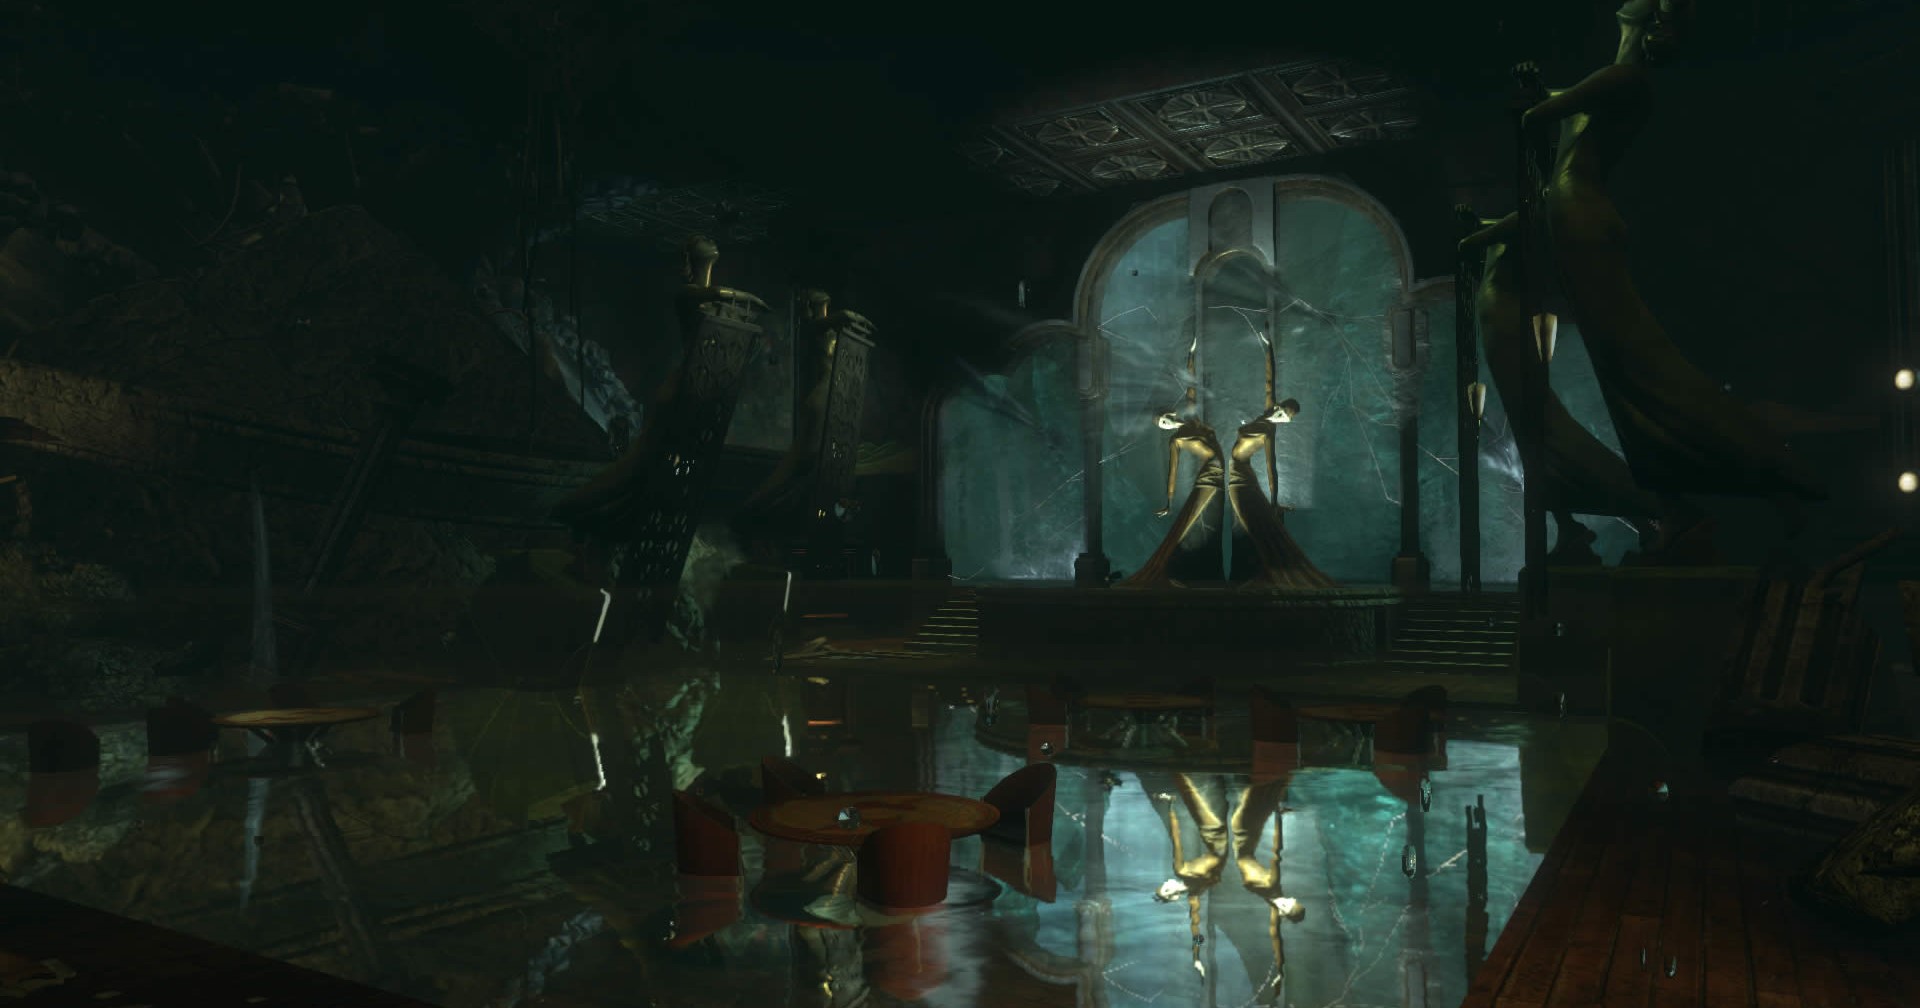 เกมใหม่จากผู้สร้าง BioShock จะเปิดตัวใกล้วันวางจำหน่าย